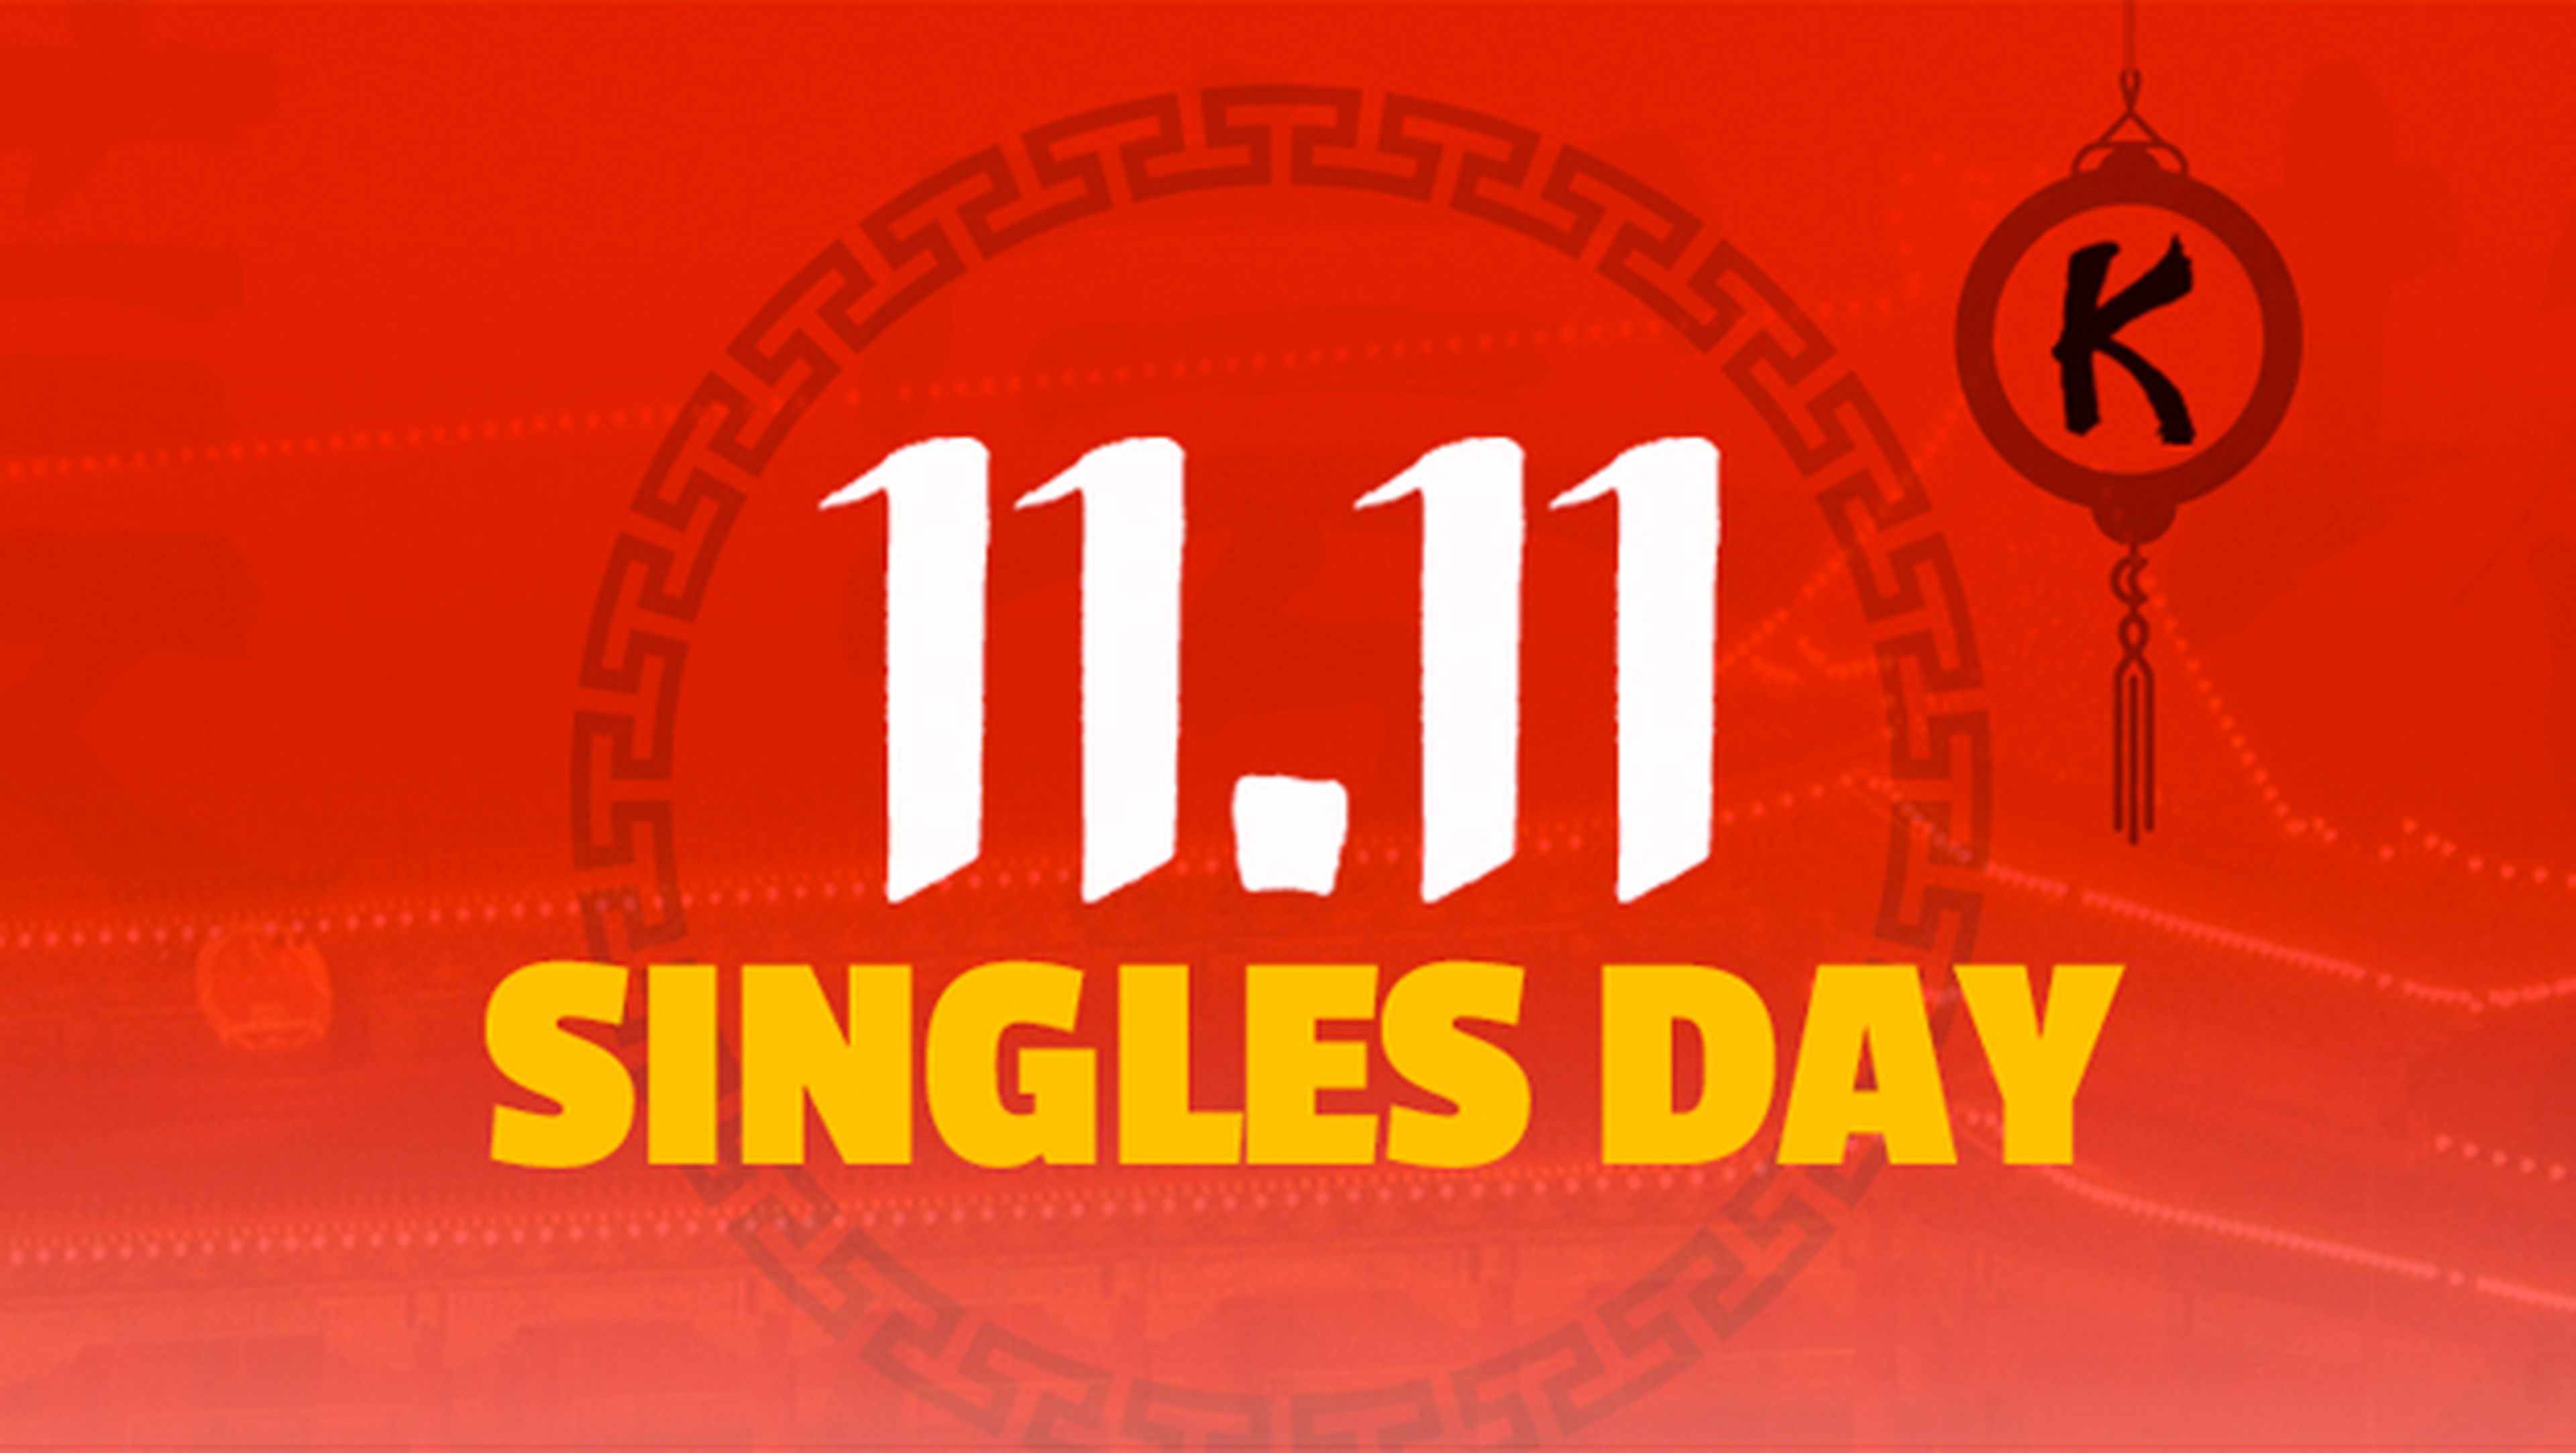 Las mejores ofertas del 11 de Noviembre (Singles Day), previas al Black Friday o Cyber Monday